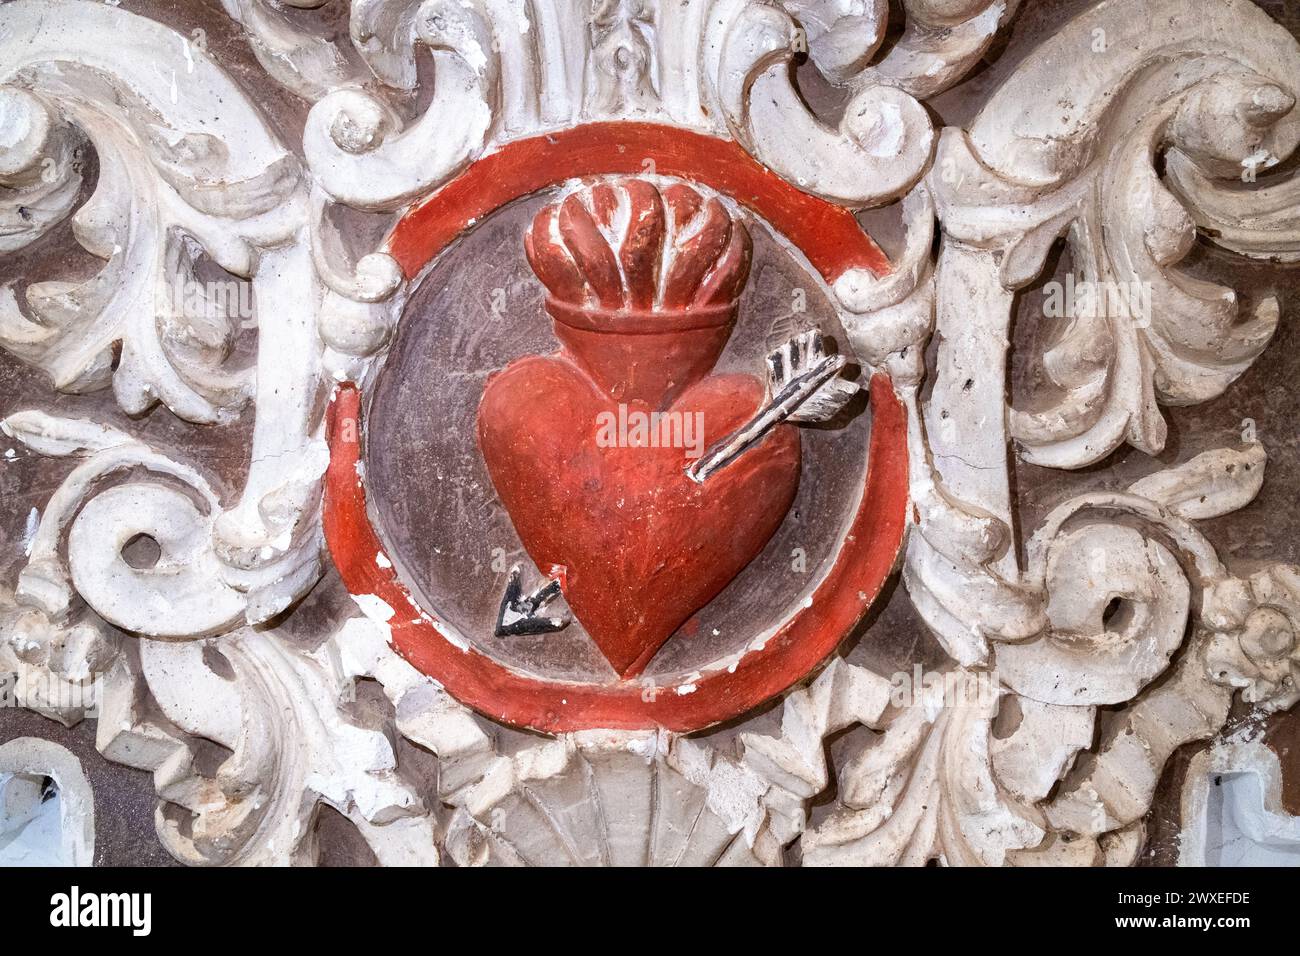 Rilievo barocco di un cuore rosso sacro trafitto da una freccia e circondato da decorazioni in gesso bianco. Dettaglio decorativo nella Chiesa di San Agustin i. Foto Stock